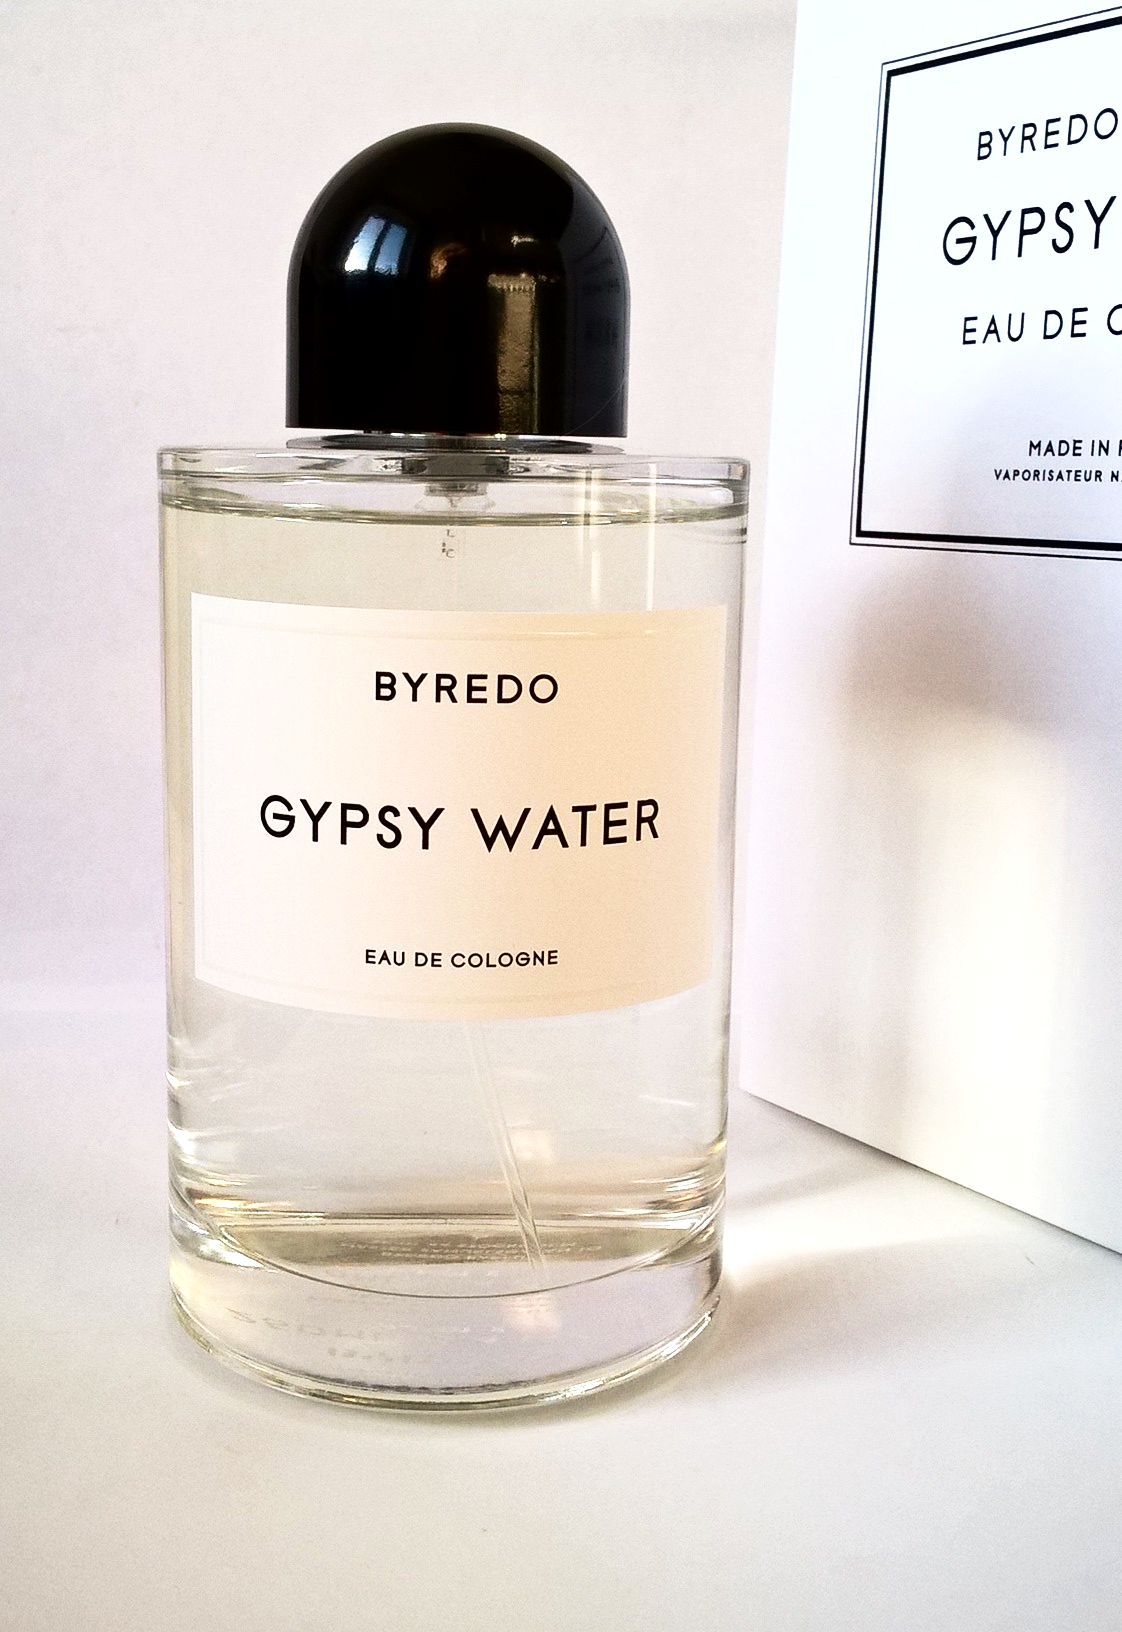 Байредо Джипси Ватер. Байредо Блэк Саффрон. Byredo Gypsy Gypsy Water. Byredo Gypsy Water пирамида.